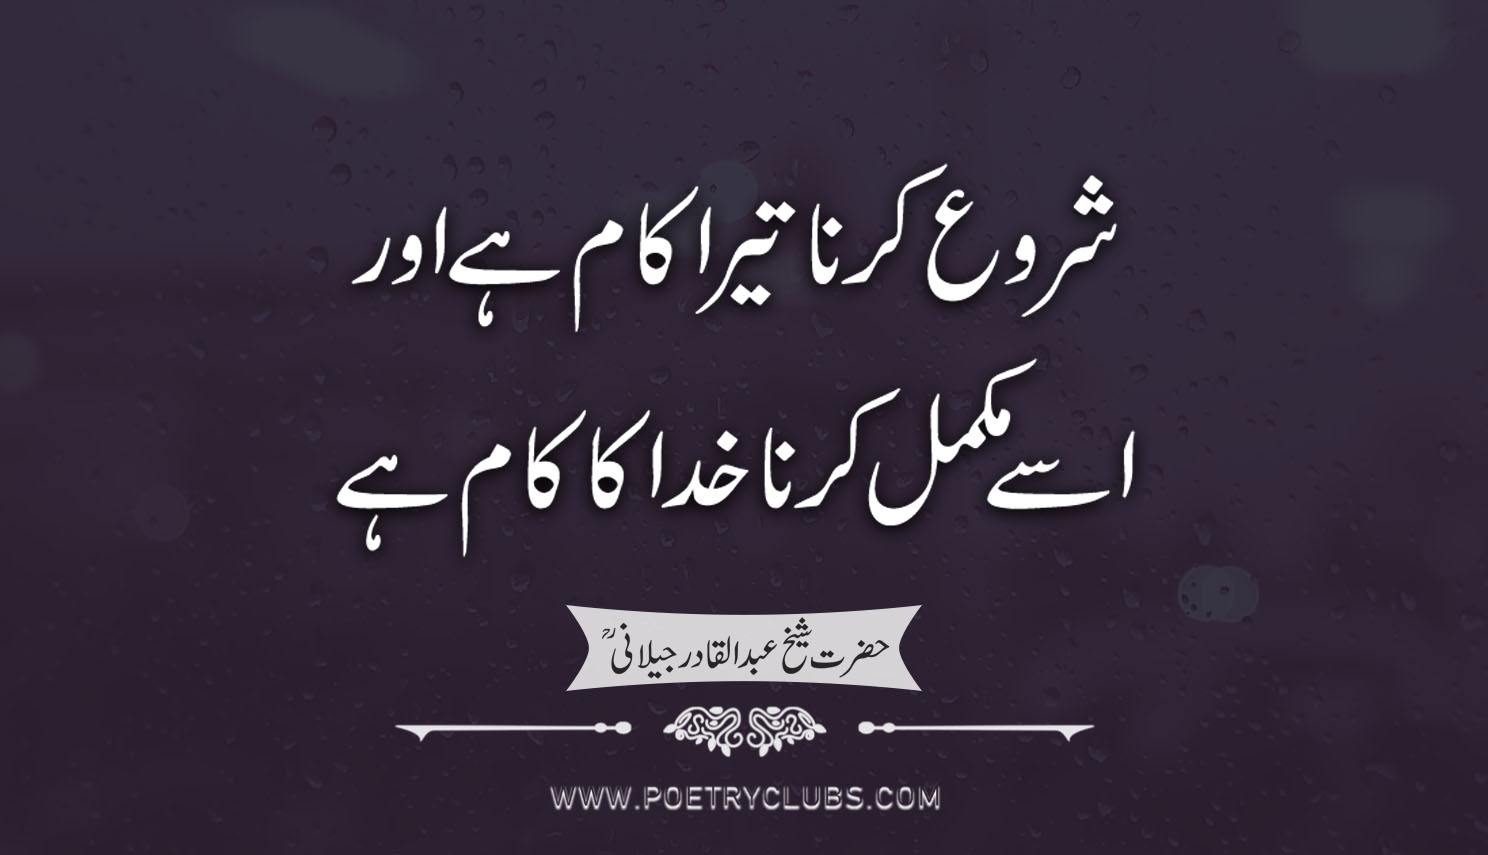 Powerful Spiritual Quotes - Famous Inspiring Urdu Quotes ...